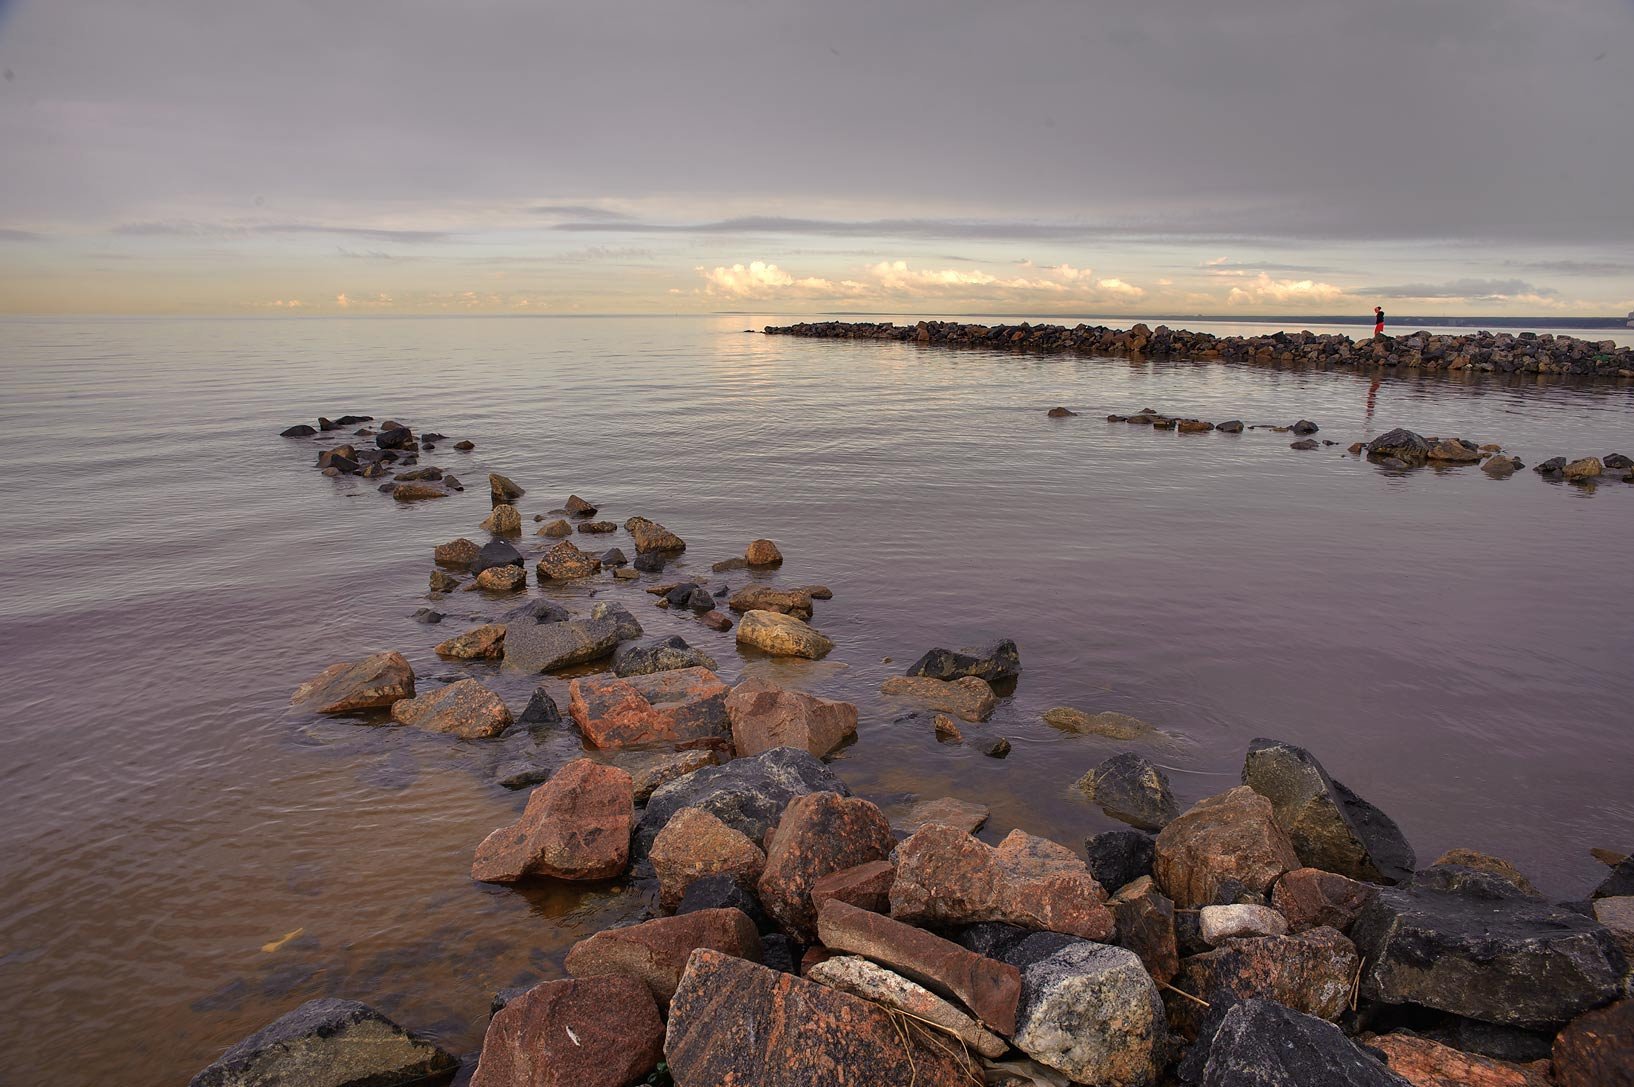 Финский залив соленая вода. Каменный пляж финский залив Питер. Ботнический залив и финский залив. Финский залив Свеаборг. Финский залив 1856.